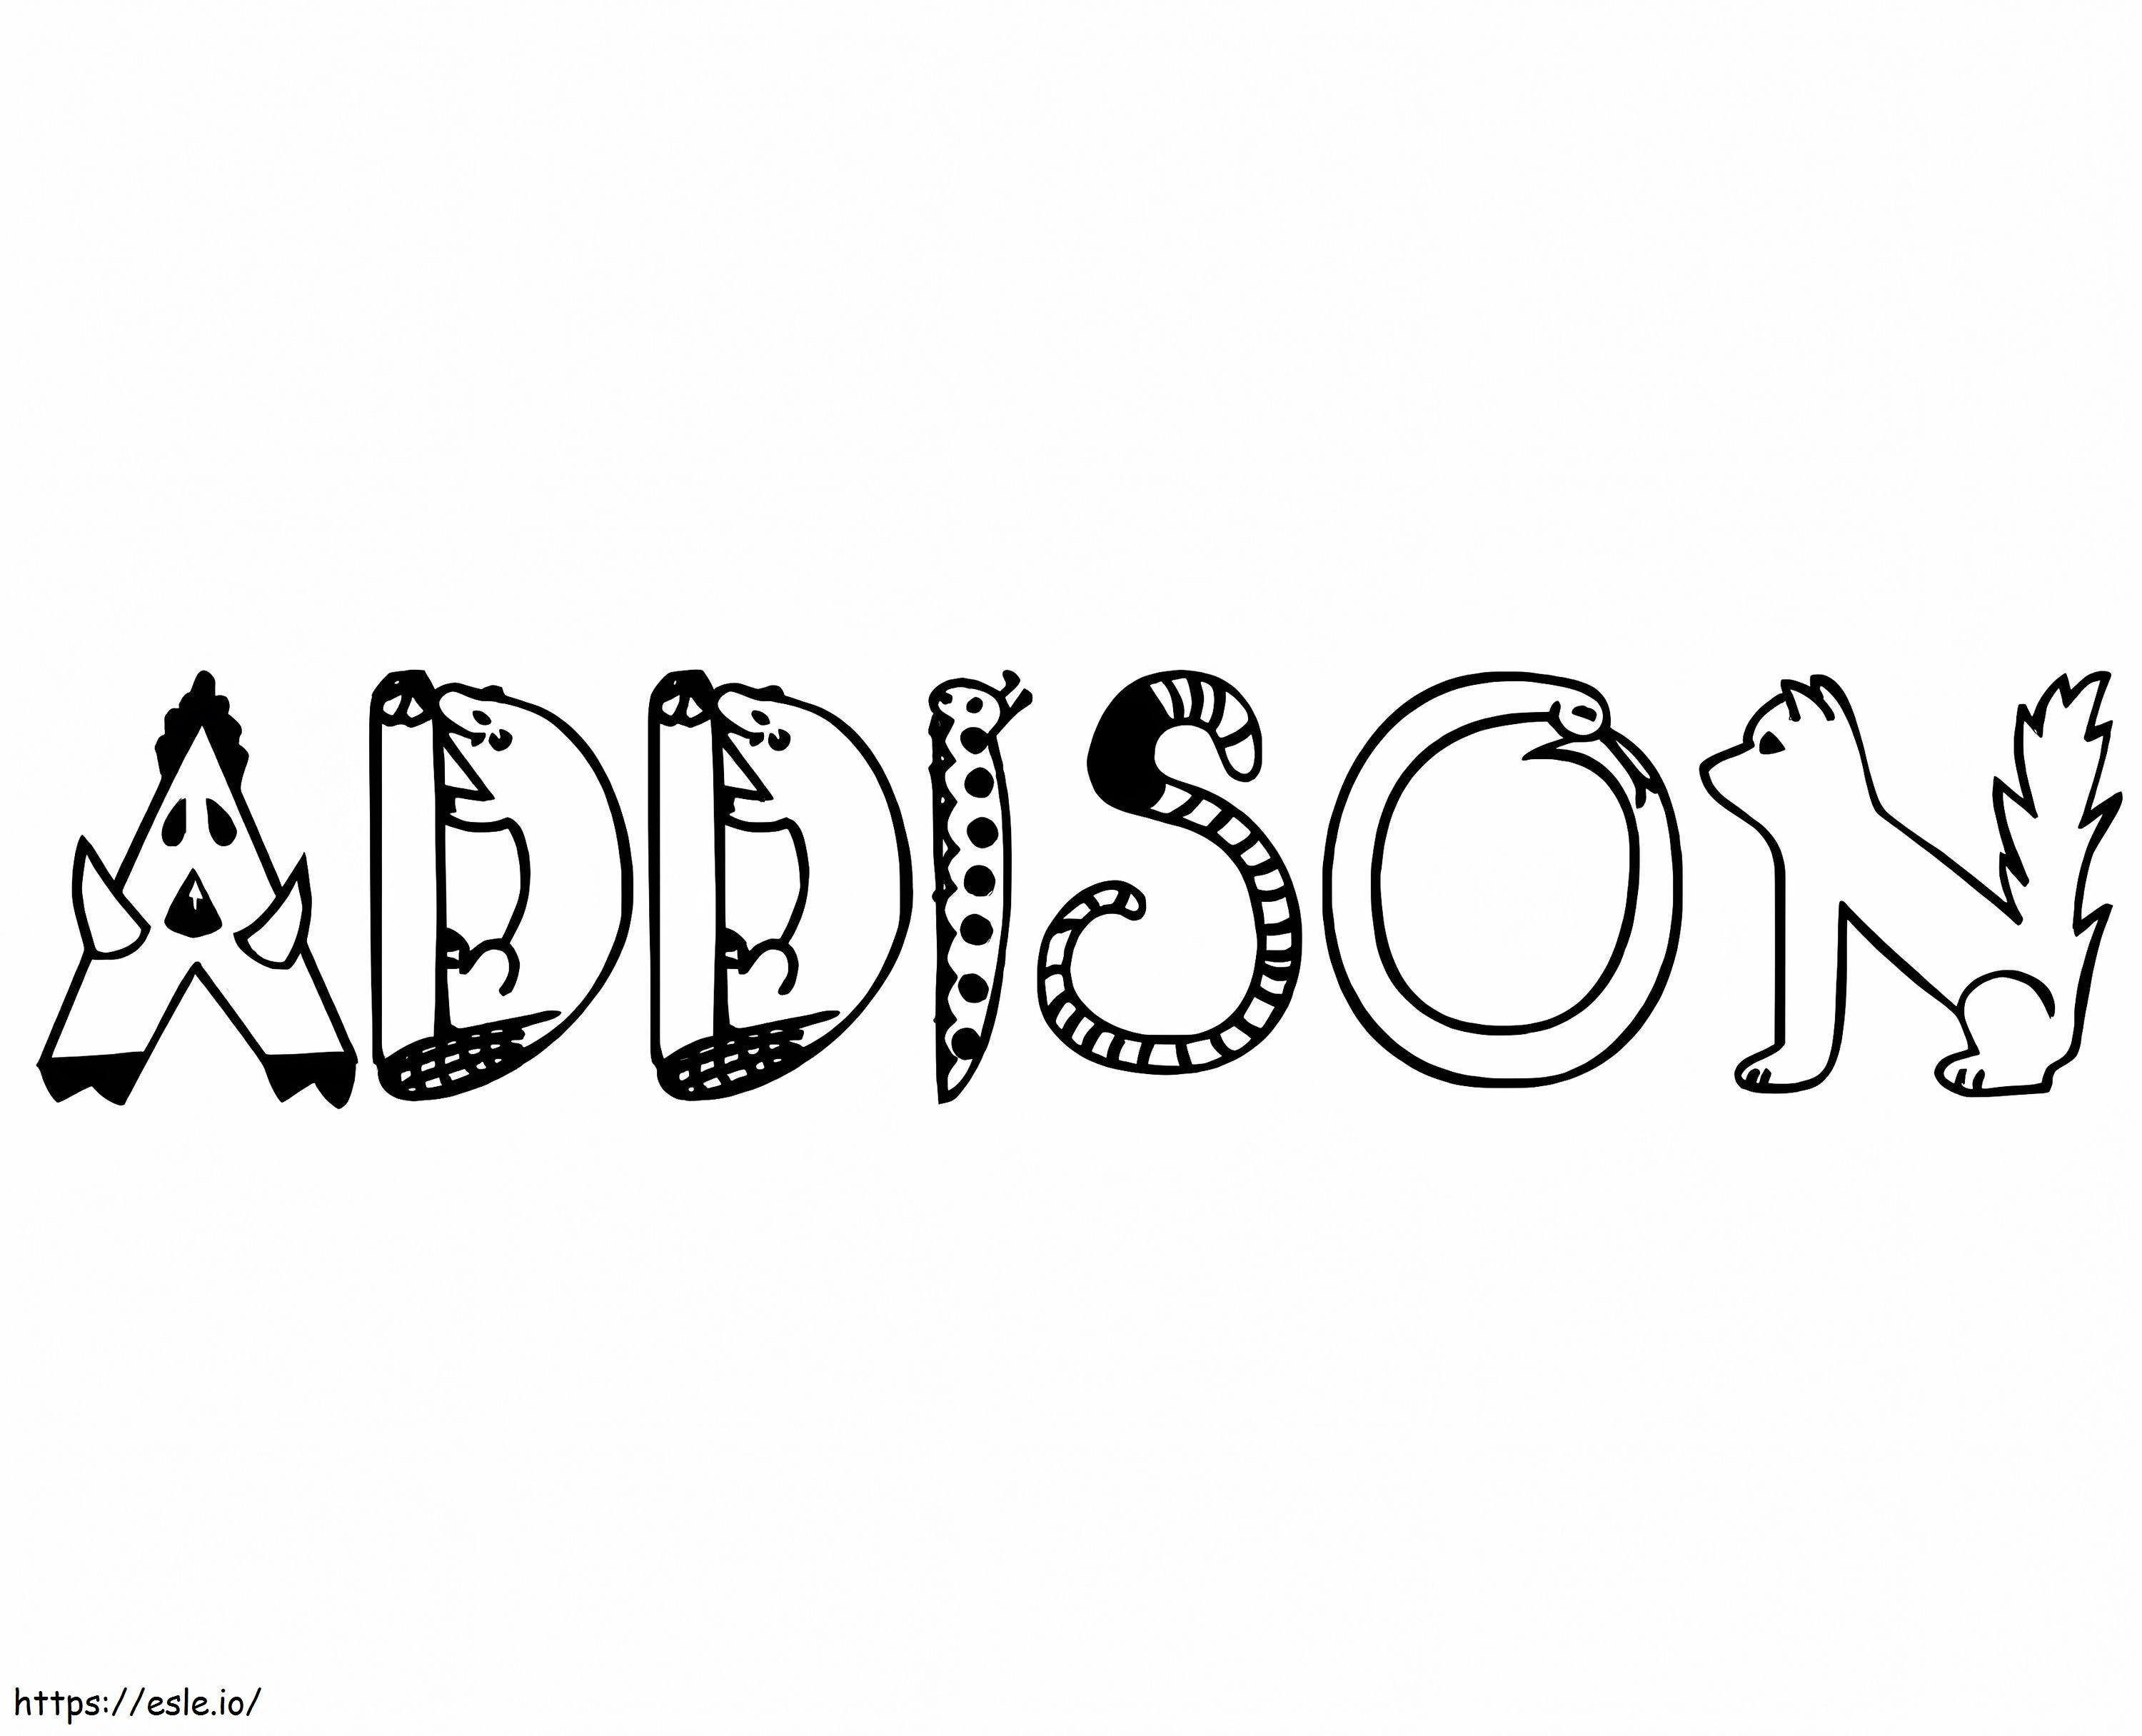 Addison 5 ausmalbilder